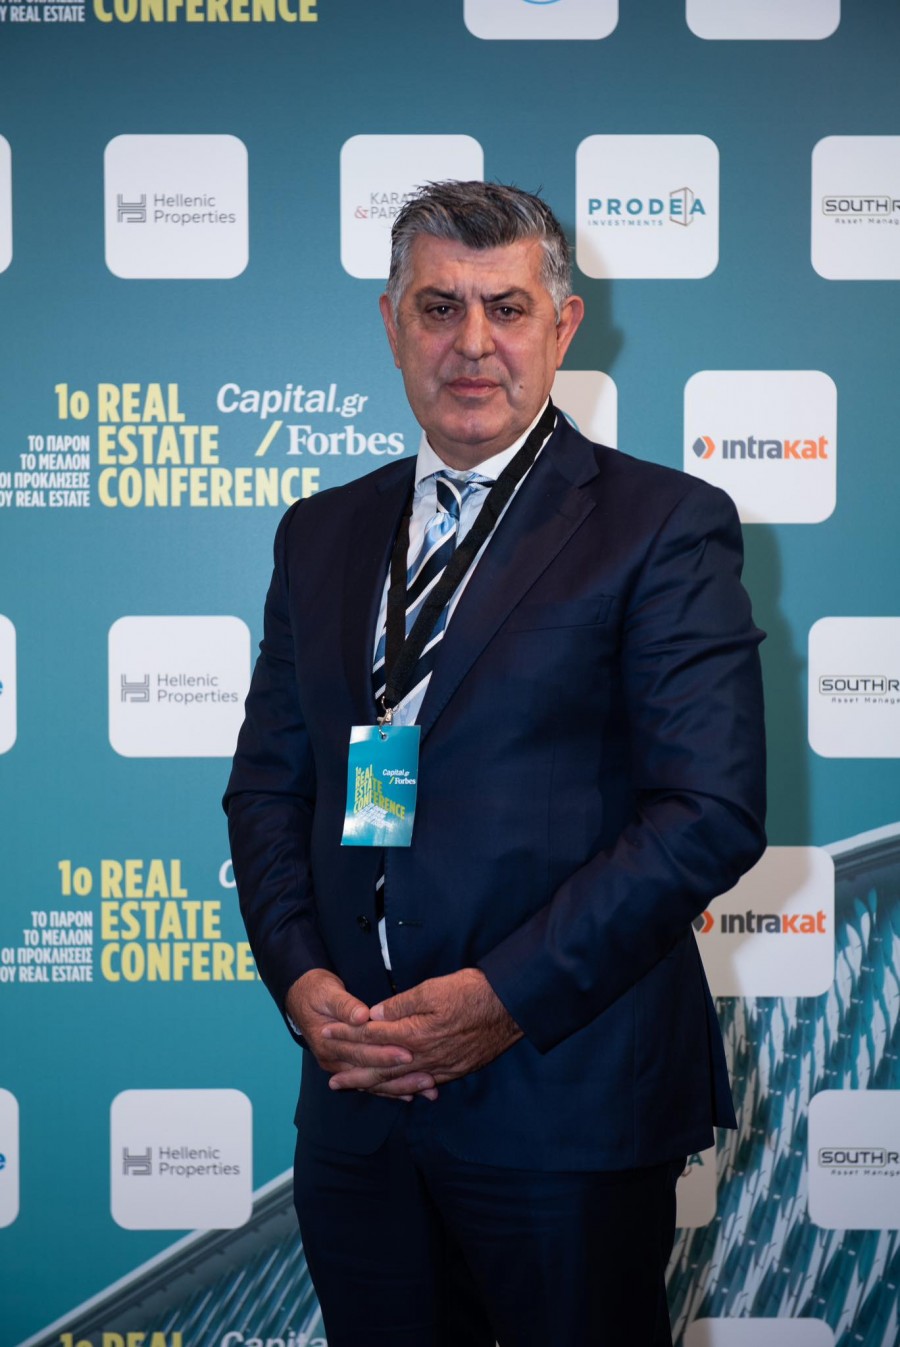 Ο Βασίλης Ηλιόπουλος αποκαλύπτει  :  Η ψηφιοποίηση και η διαχείριση δεδομένων του real estate θα βοηθήσει την οικονομία  !